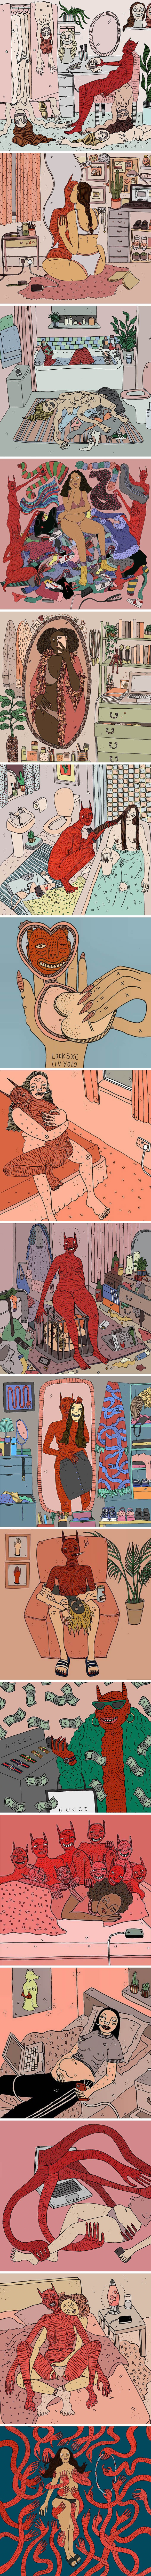 Djevojke i njihovi demoni: Ilustratorica je prikazala žensku seksualnost  inspirirana svojim frustracijama, anskioznošću i tugom